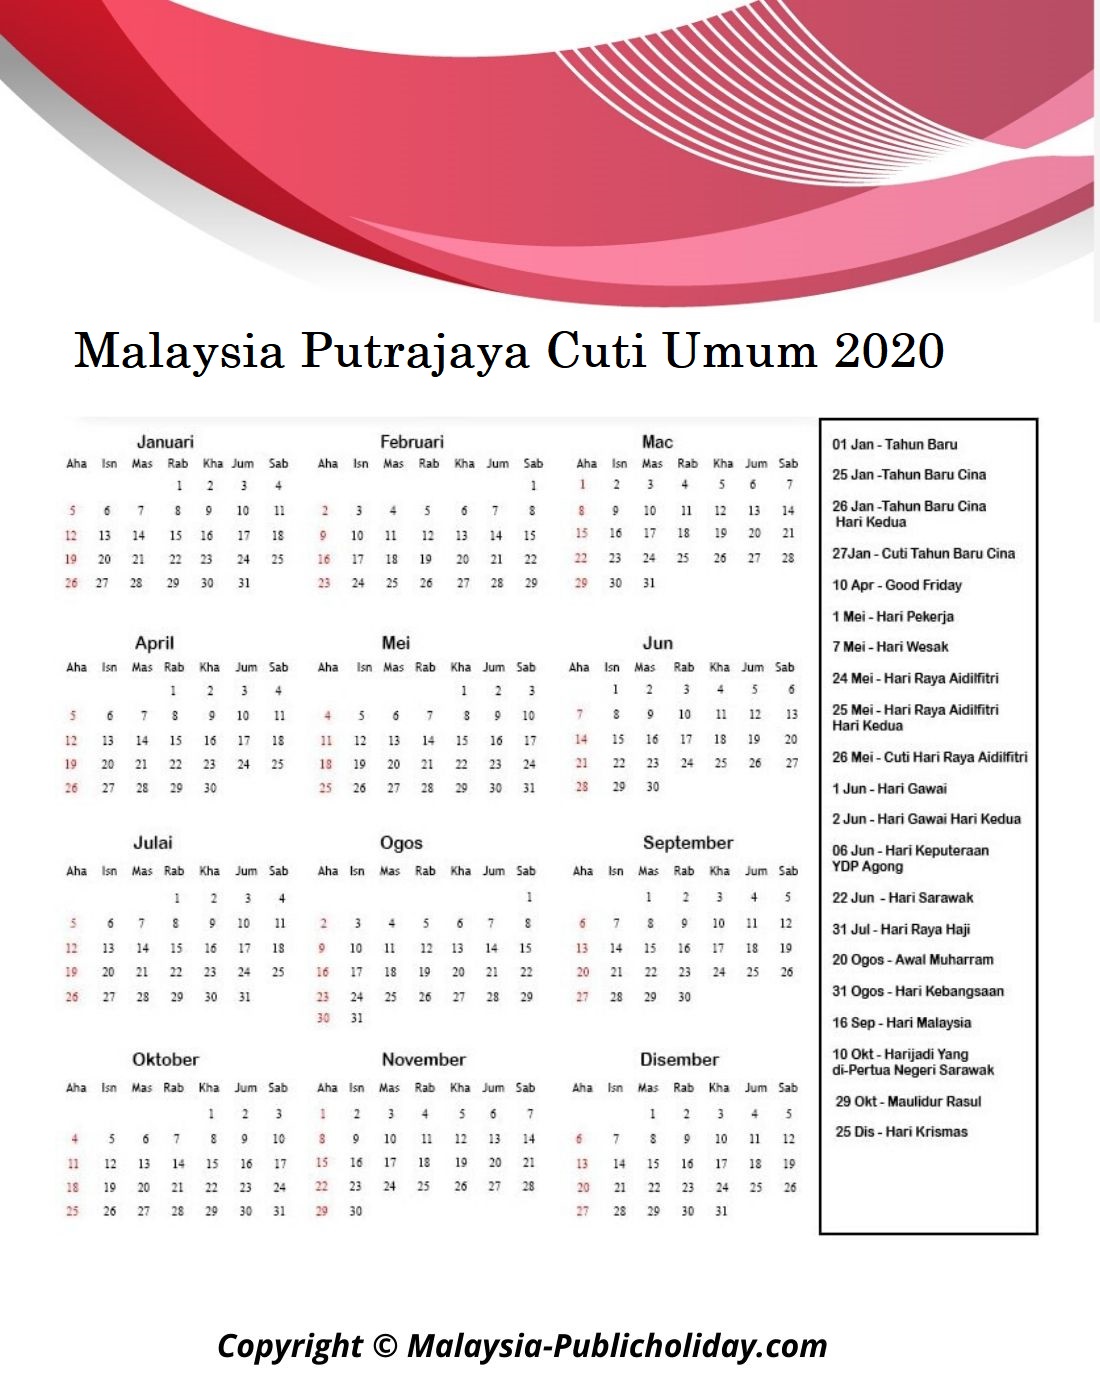 Kalendar Putrajaya 2020 Malaysia